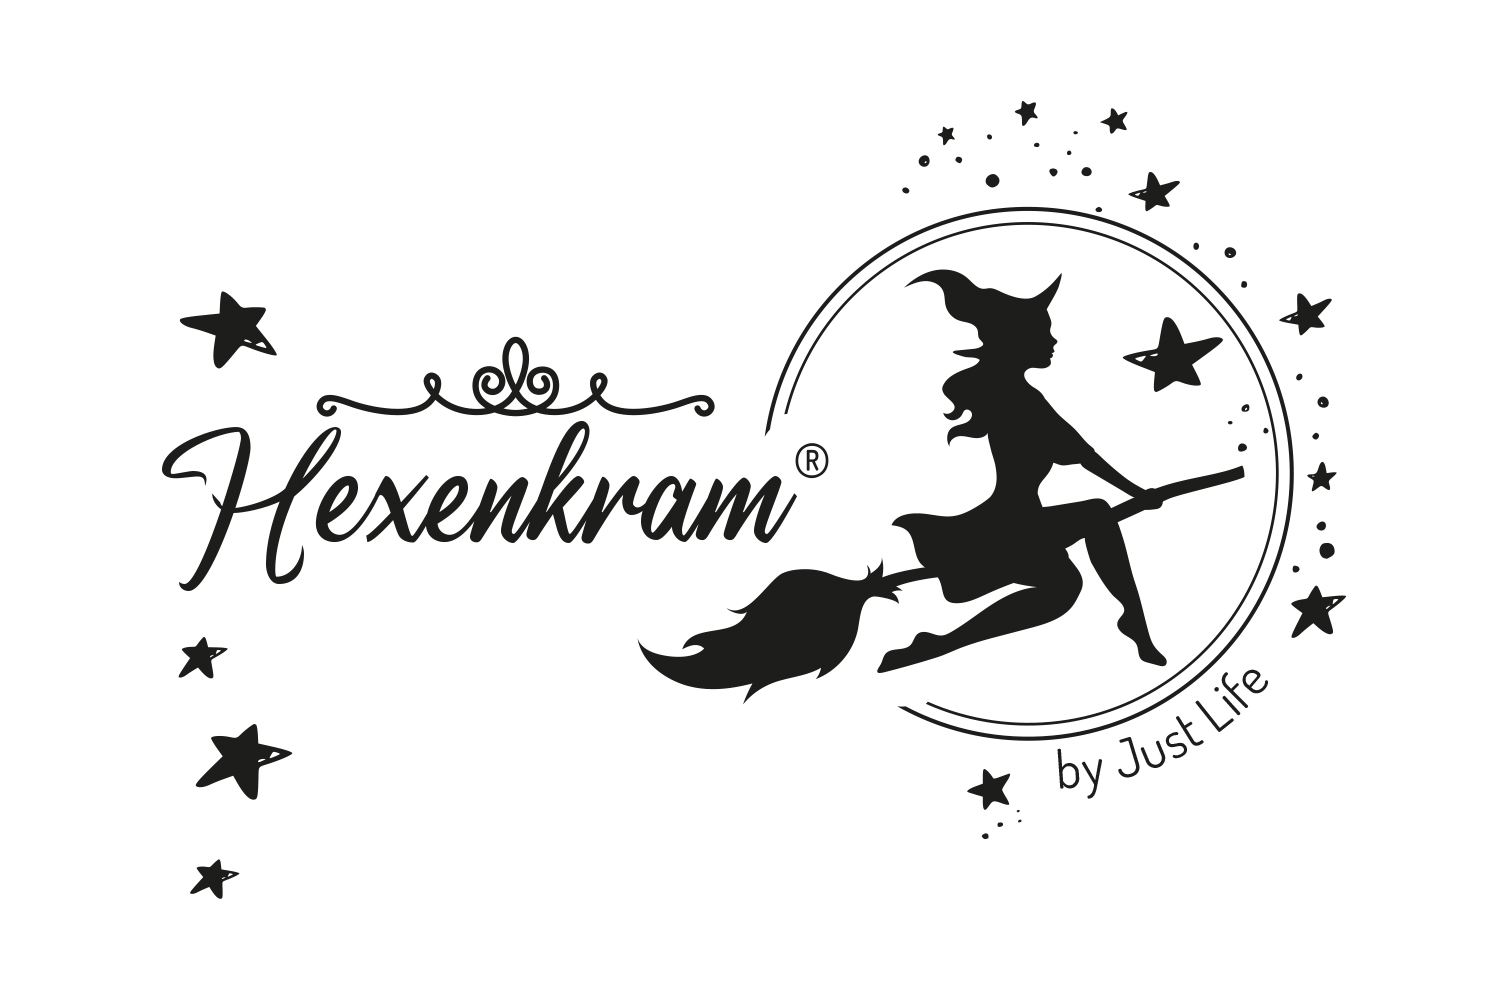 logo-hexenkram